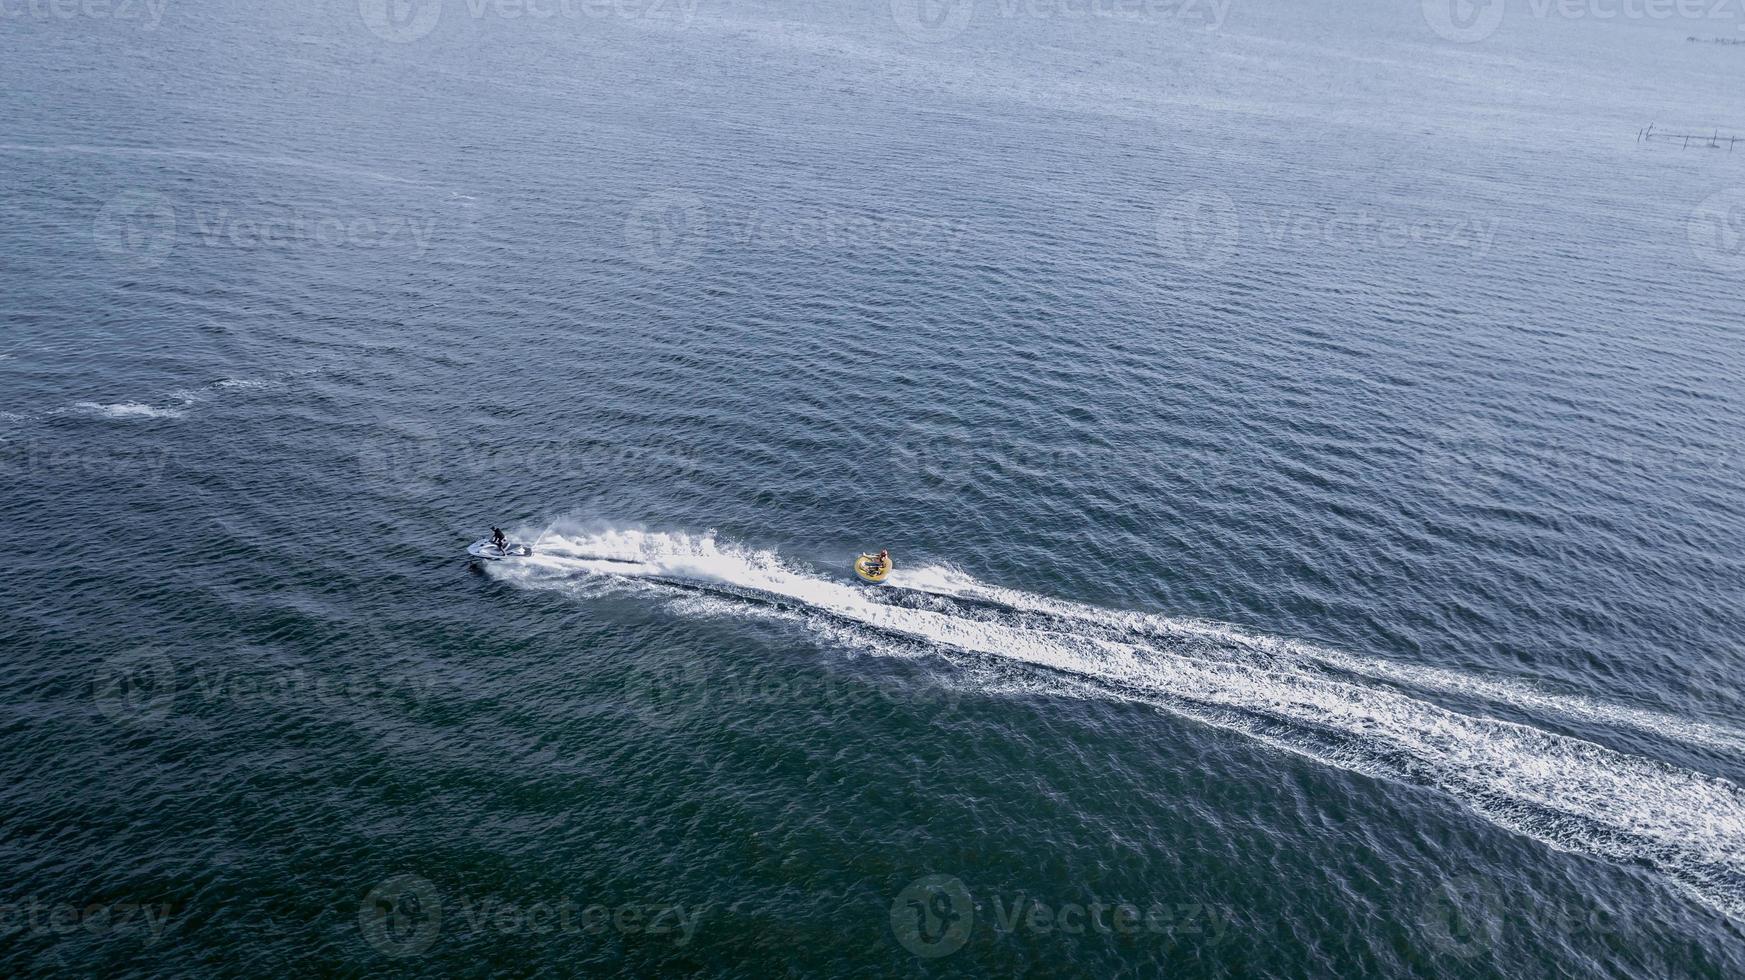 vista aerea della moto d'acqua nell'oceano foto